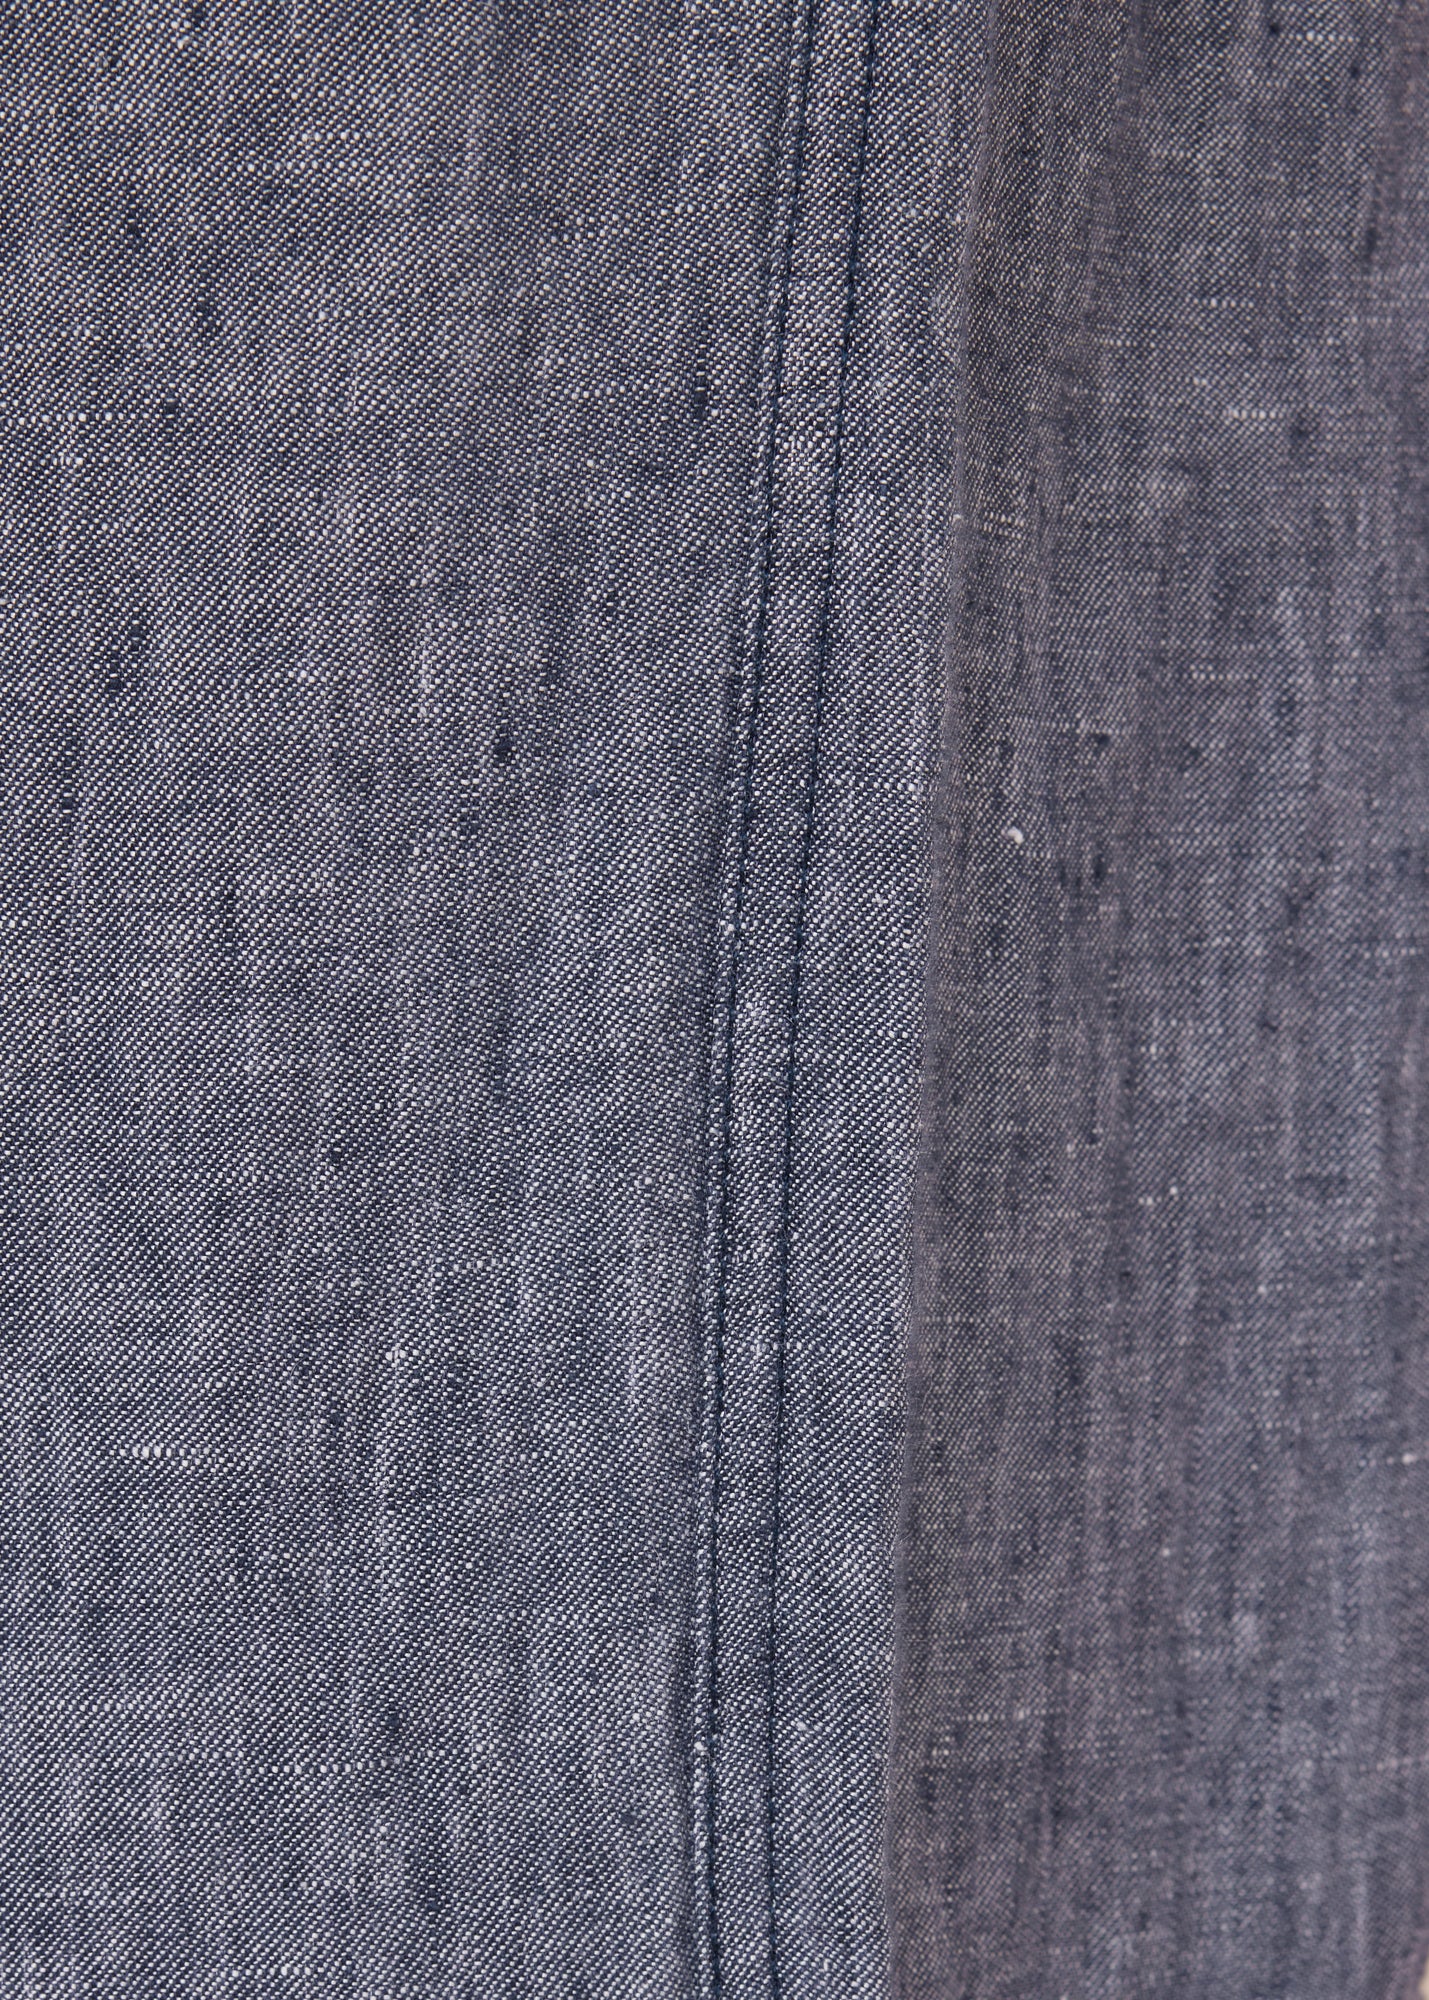 Wide linen trousers